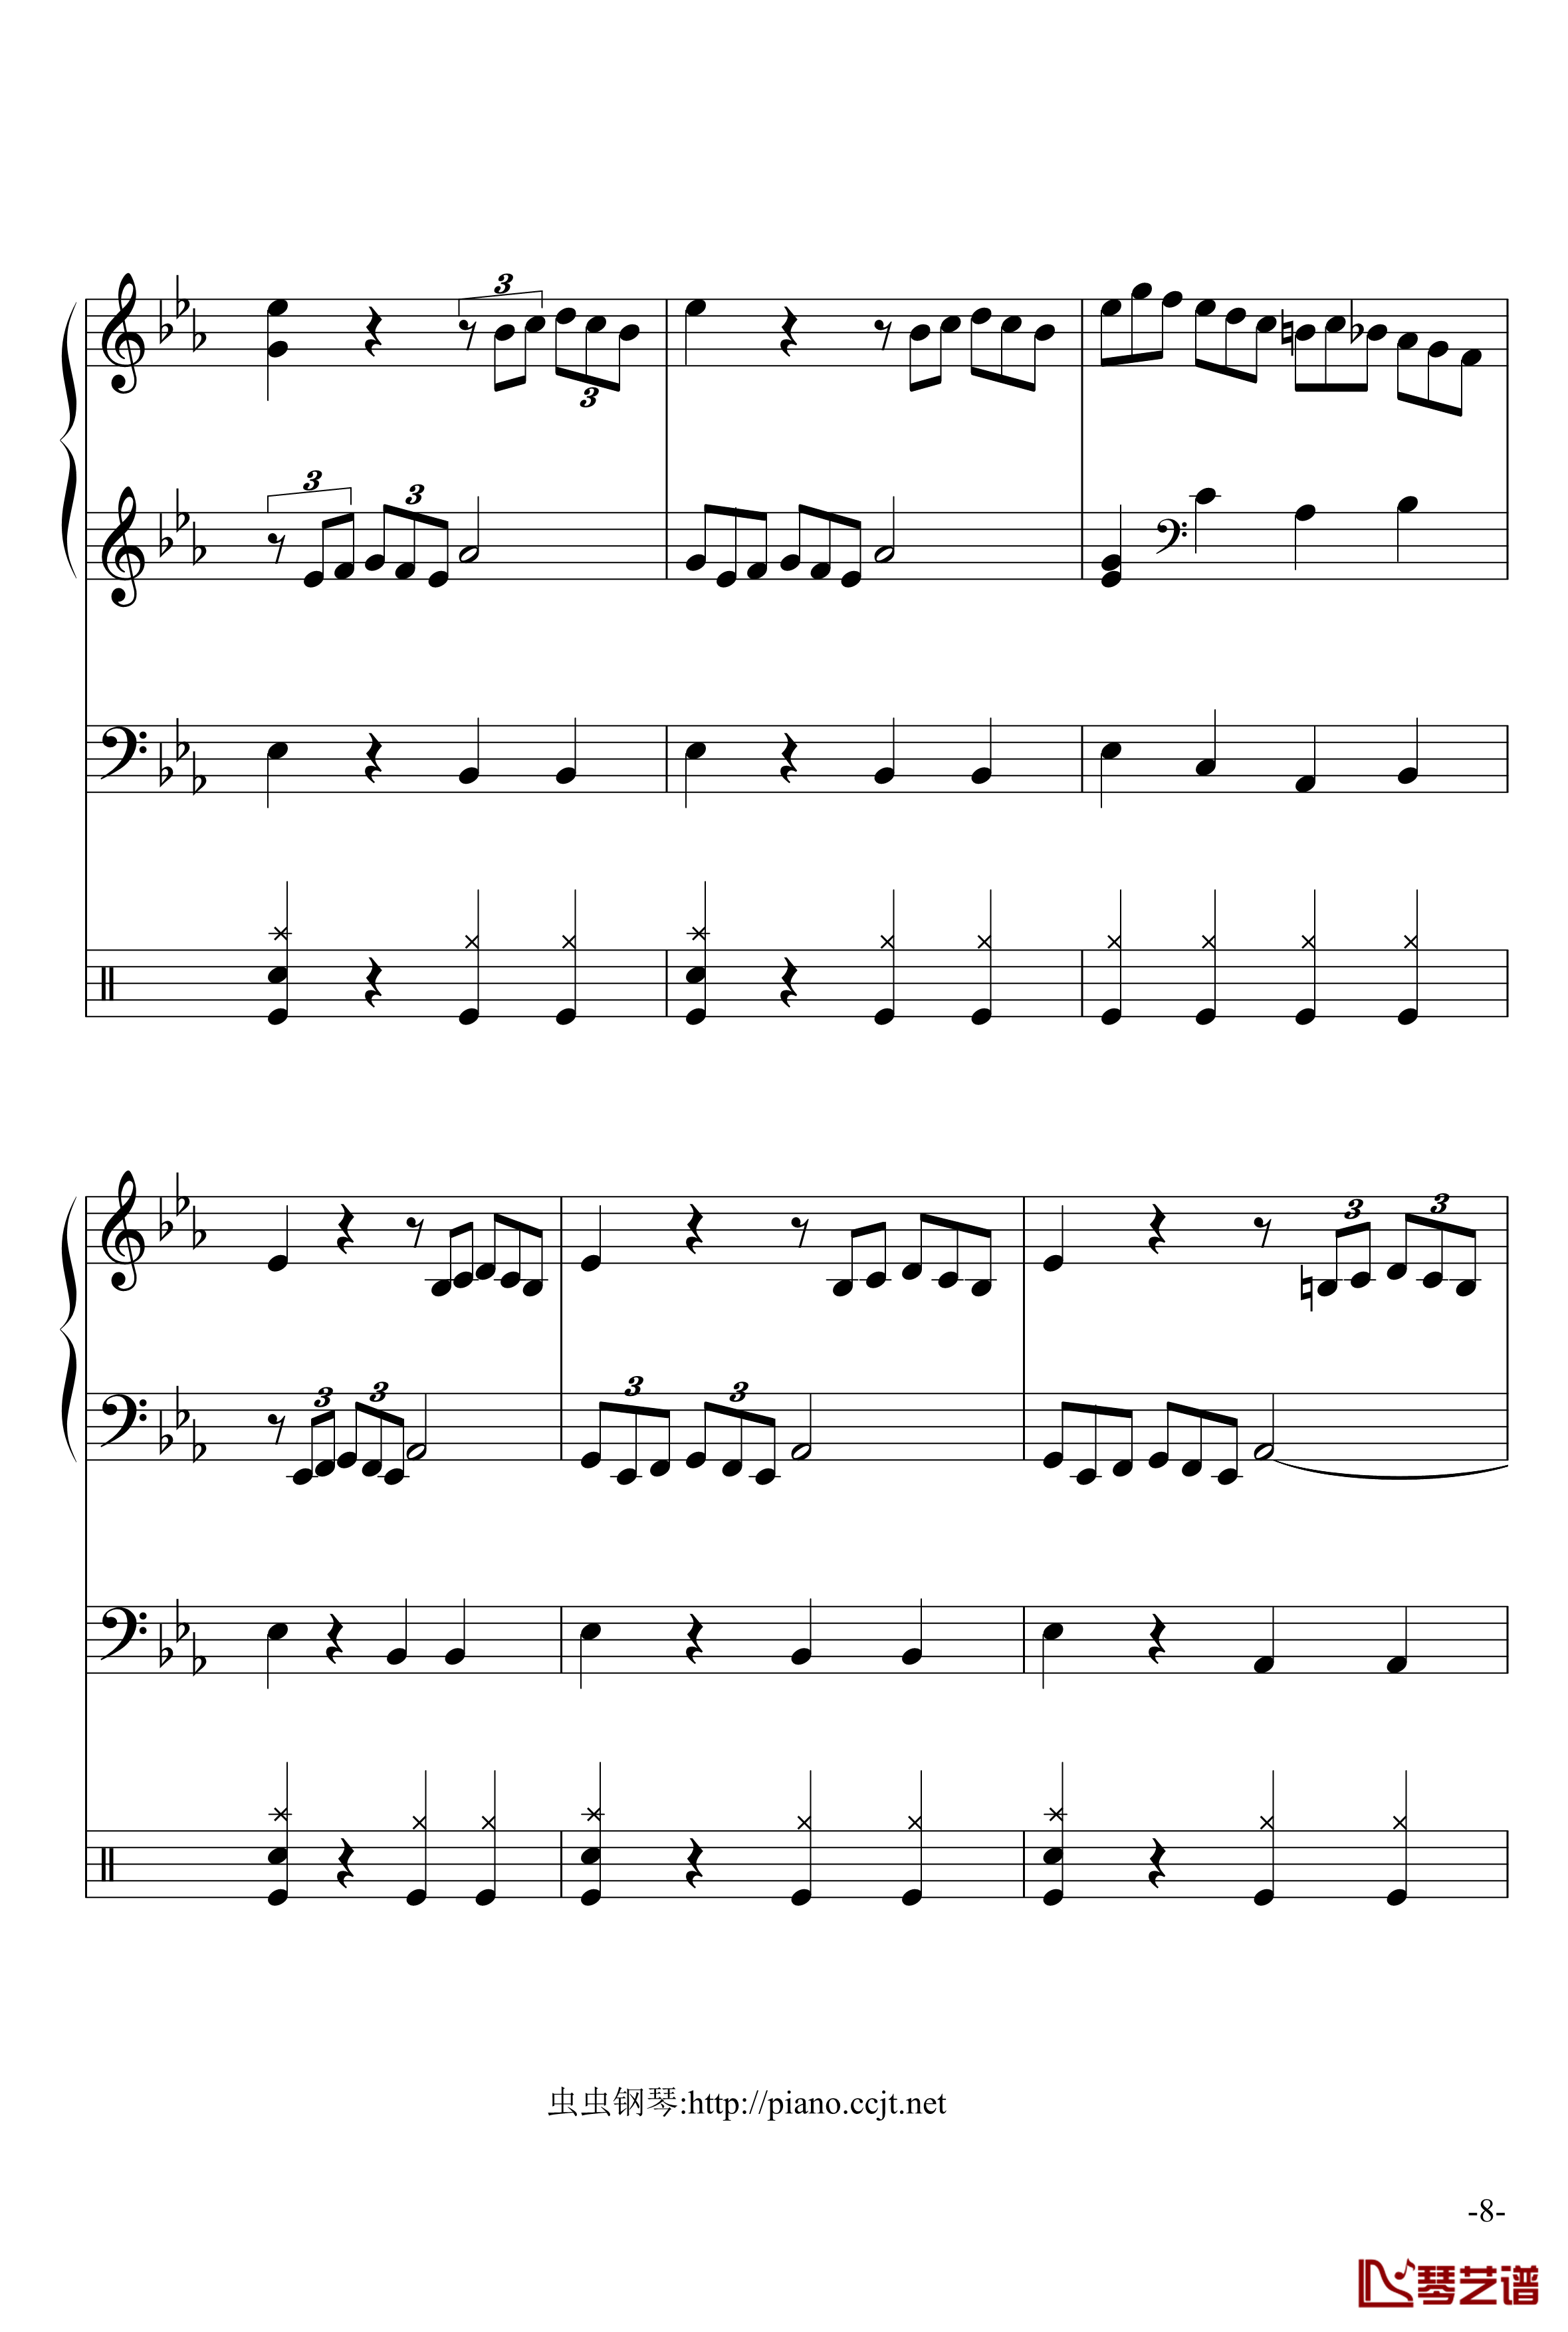 悲怆奏鸣曲钢琴谱-加小乐队-贝多芬-beethoven8